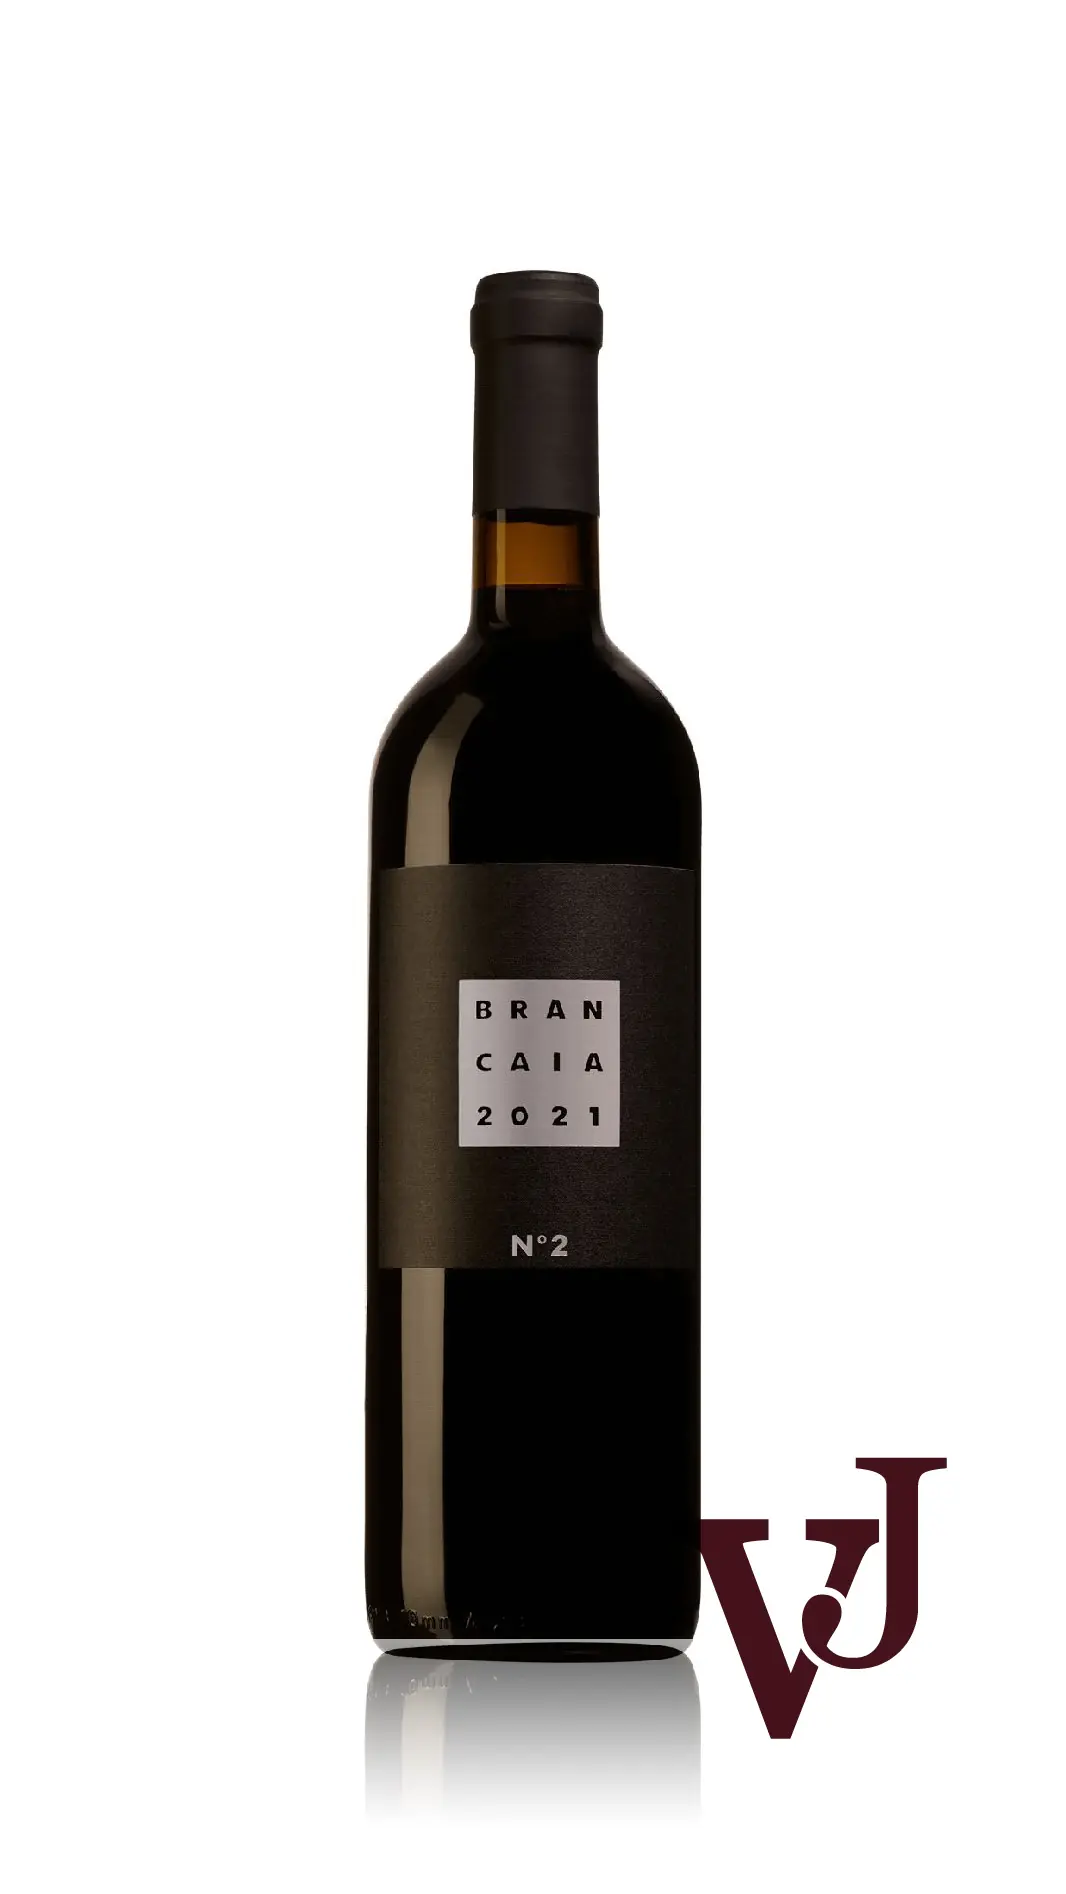 Vitt Vin - Brancaia No 2 2021 artikel nummer 9410001 från producenten Casa Brancaia från området Italien - Vinjournalen.se